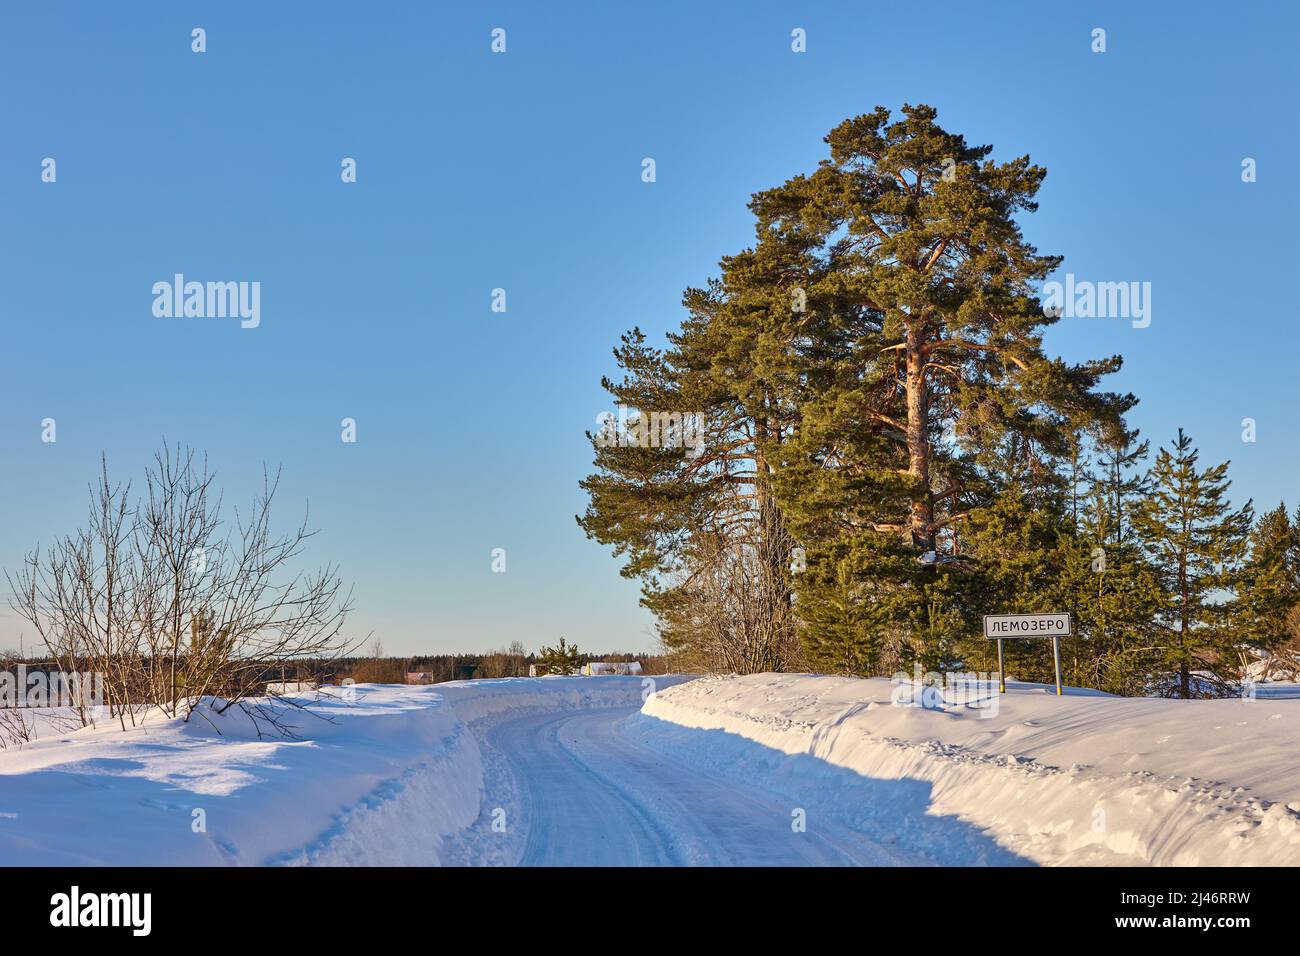 Schneebedeckte Feldstraße im Winter Republik Karelien, Russland, weist das Straßenschild auf das Dorf Lemozero hin. Stockfoto